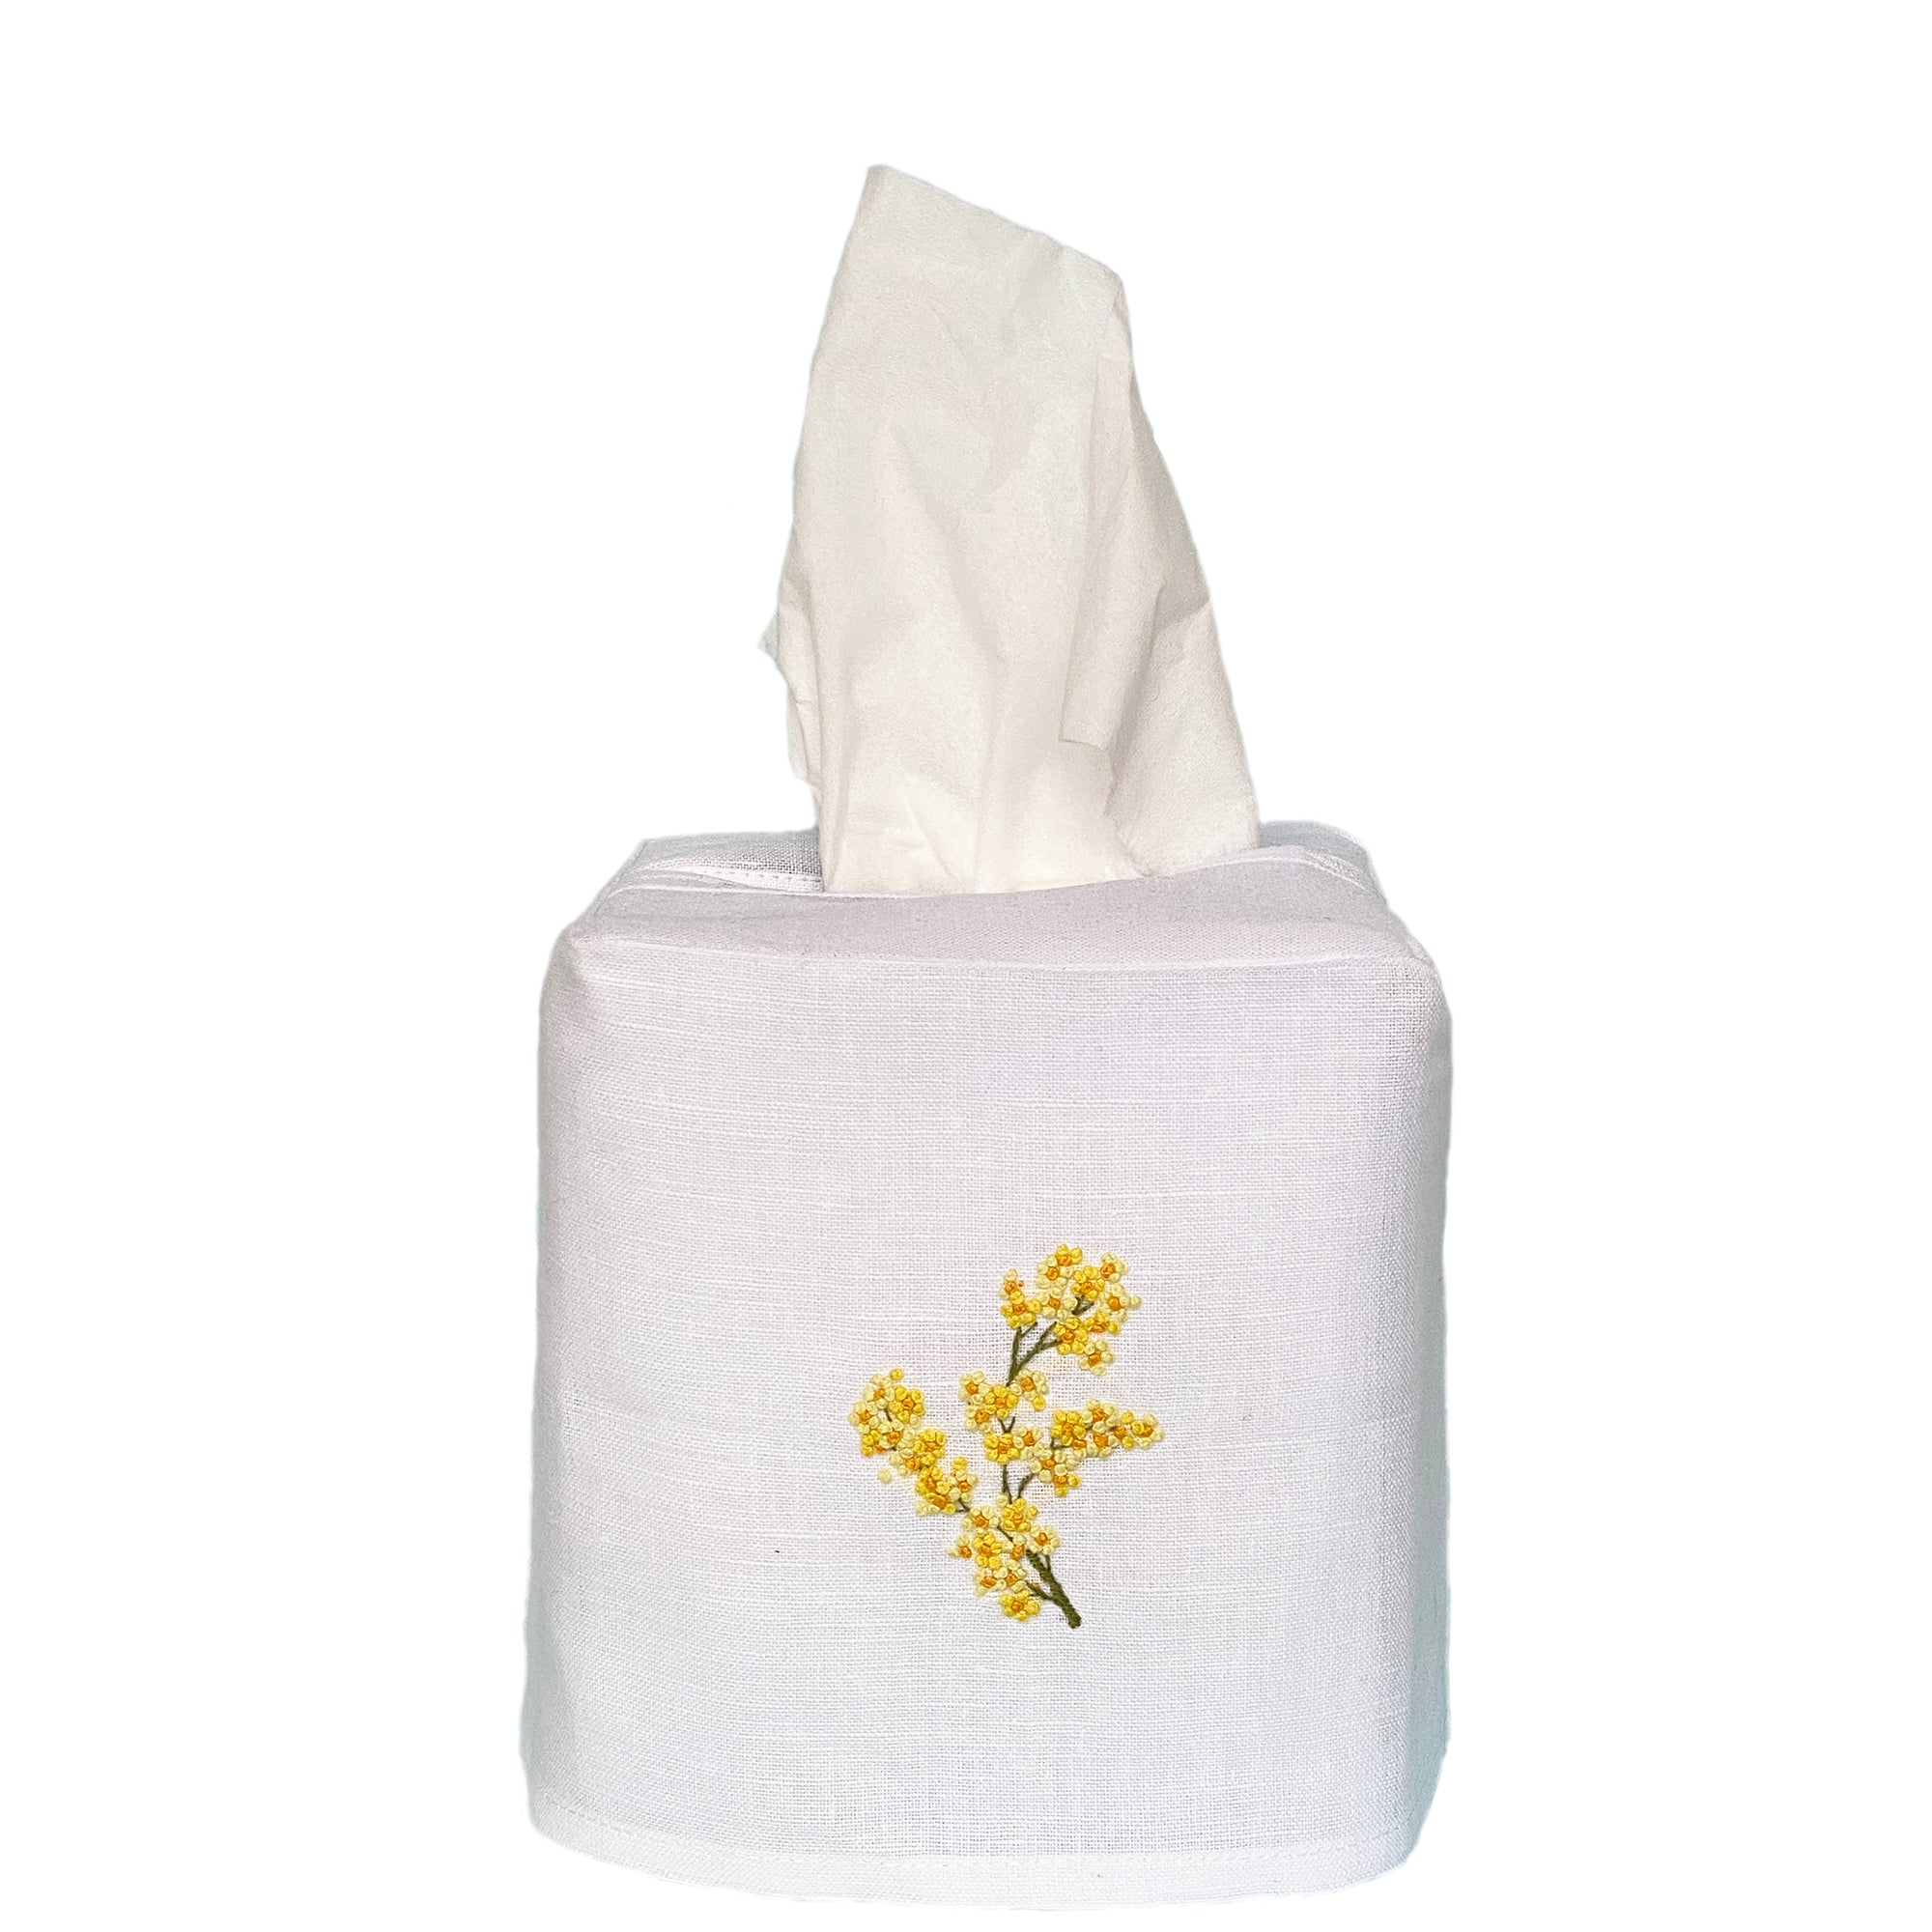 Linen Tissue Box Cover Mimosa Flower White